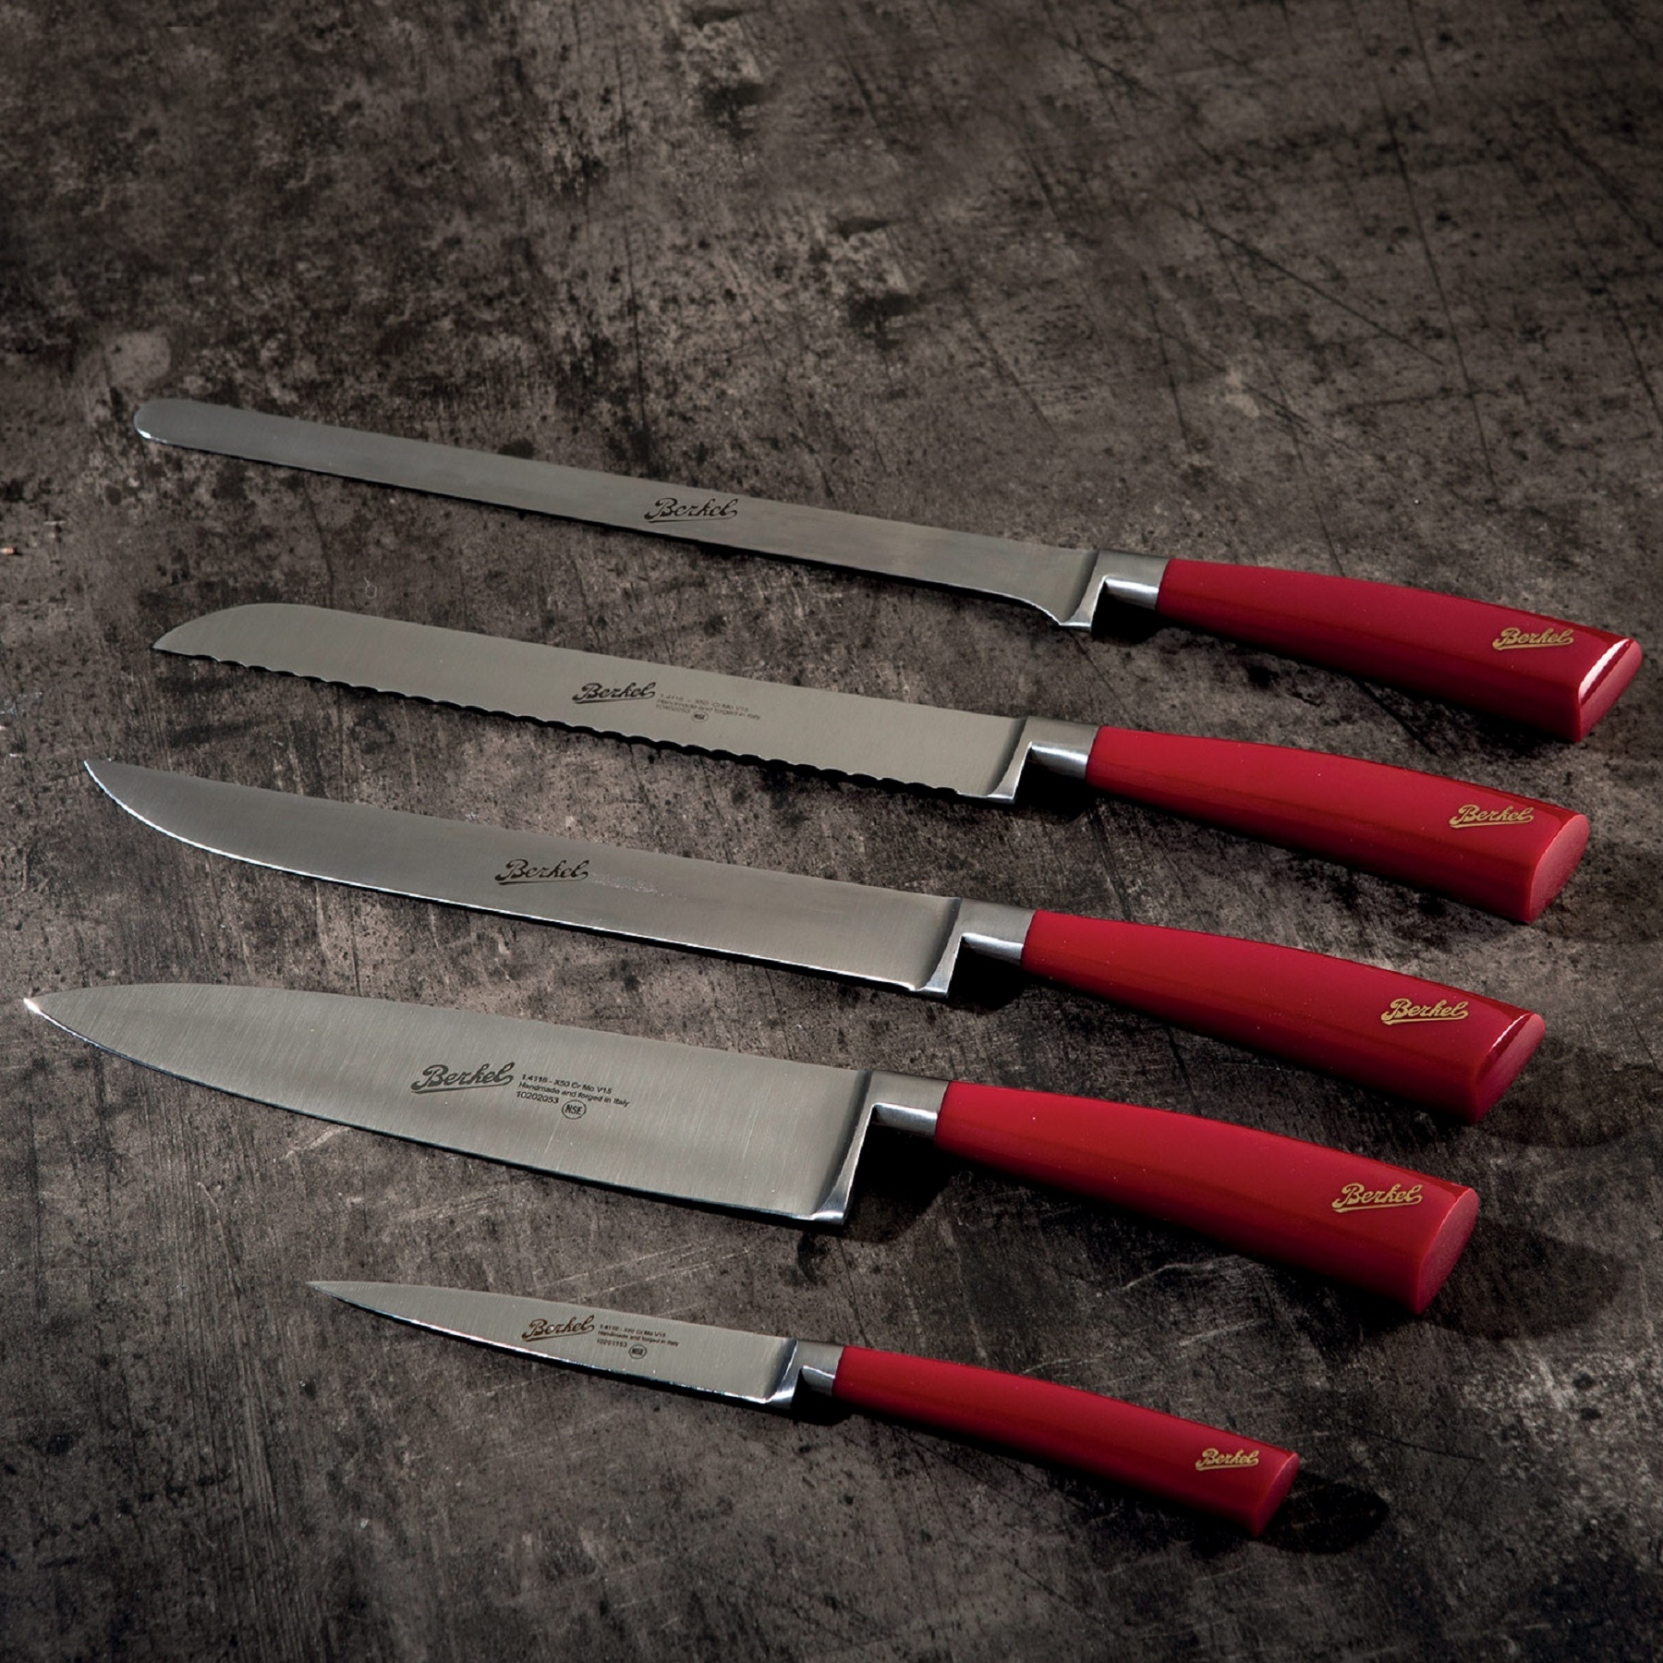 I 6 migliori coltelli da arrosto da acquistare